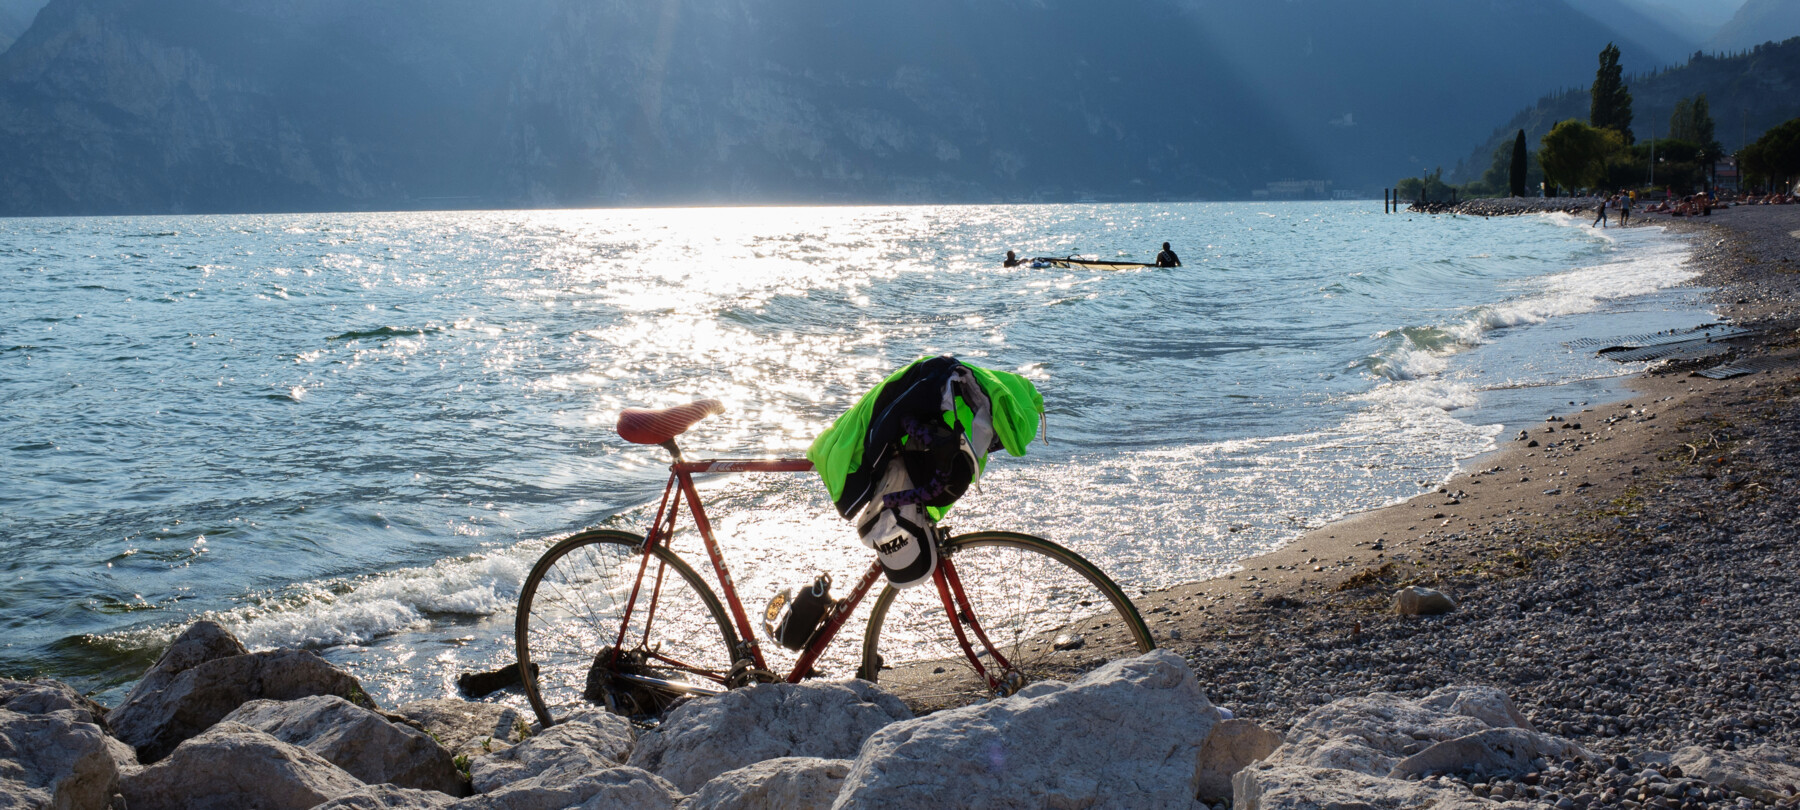 Garda Trentino - Torbole - Bici sulla spiaggia al tramonto
